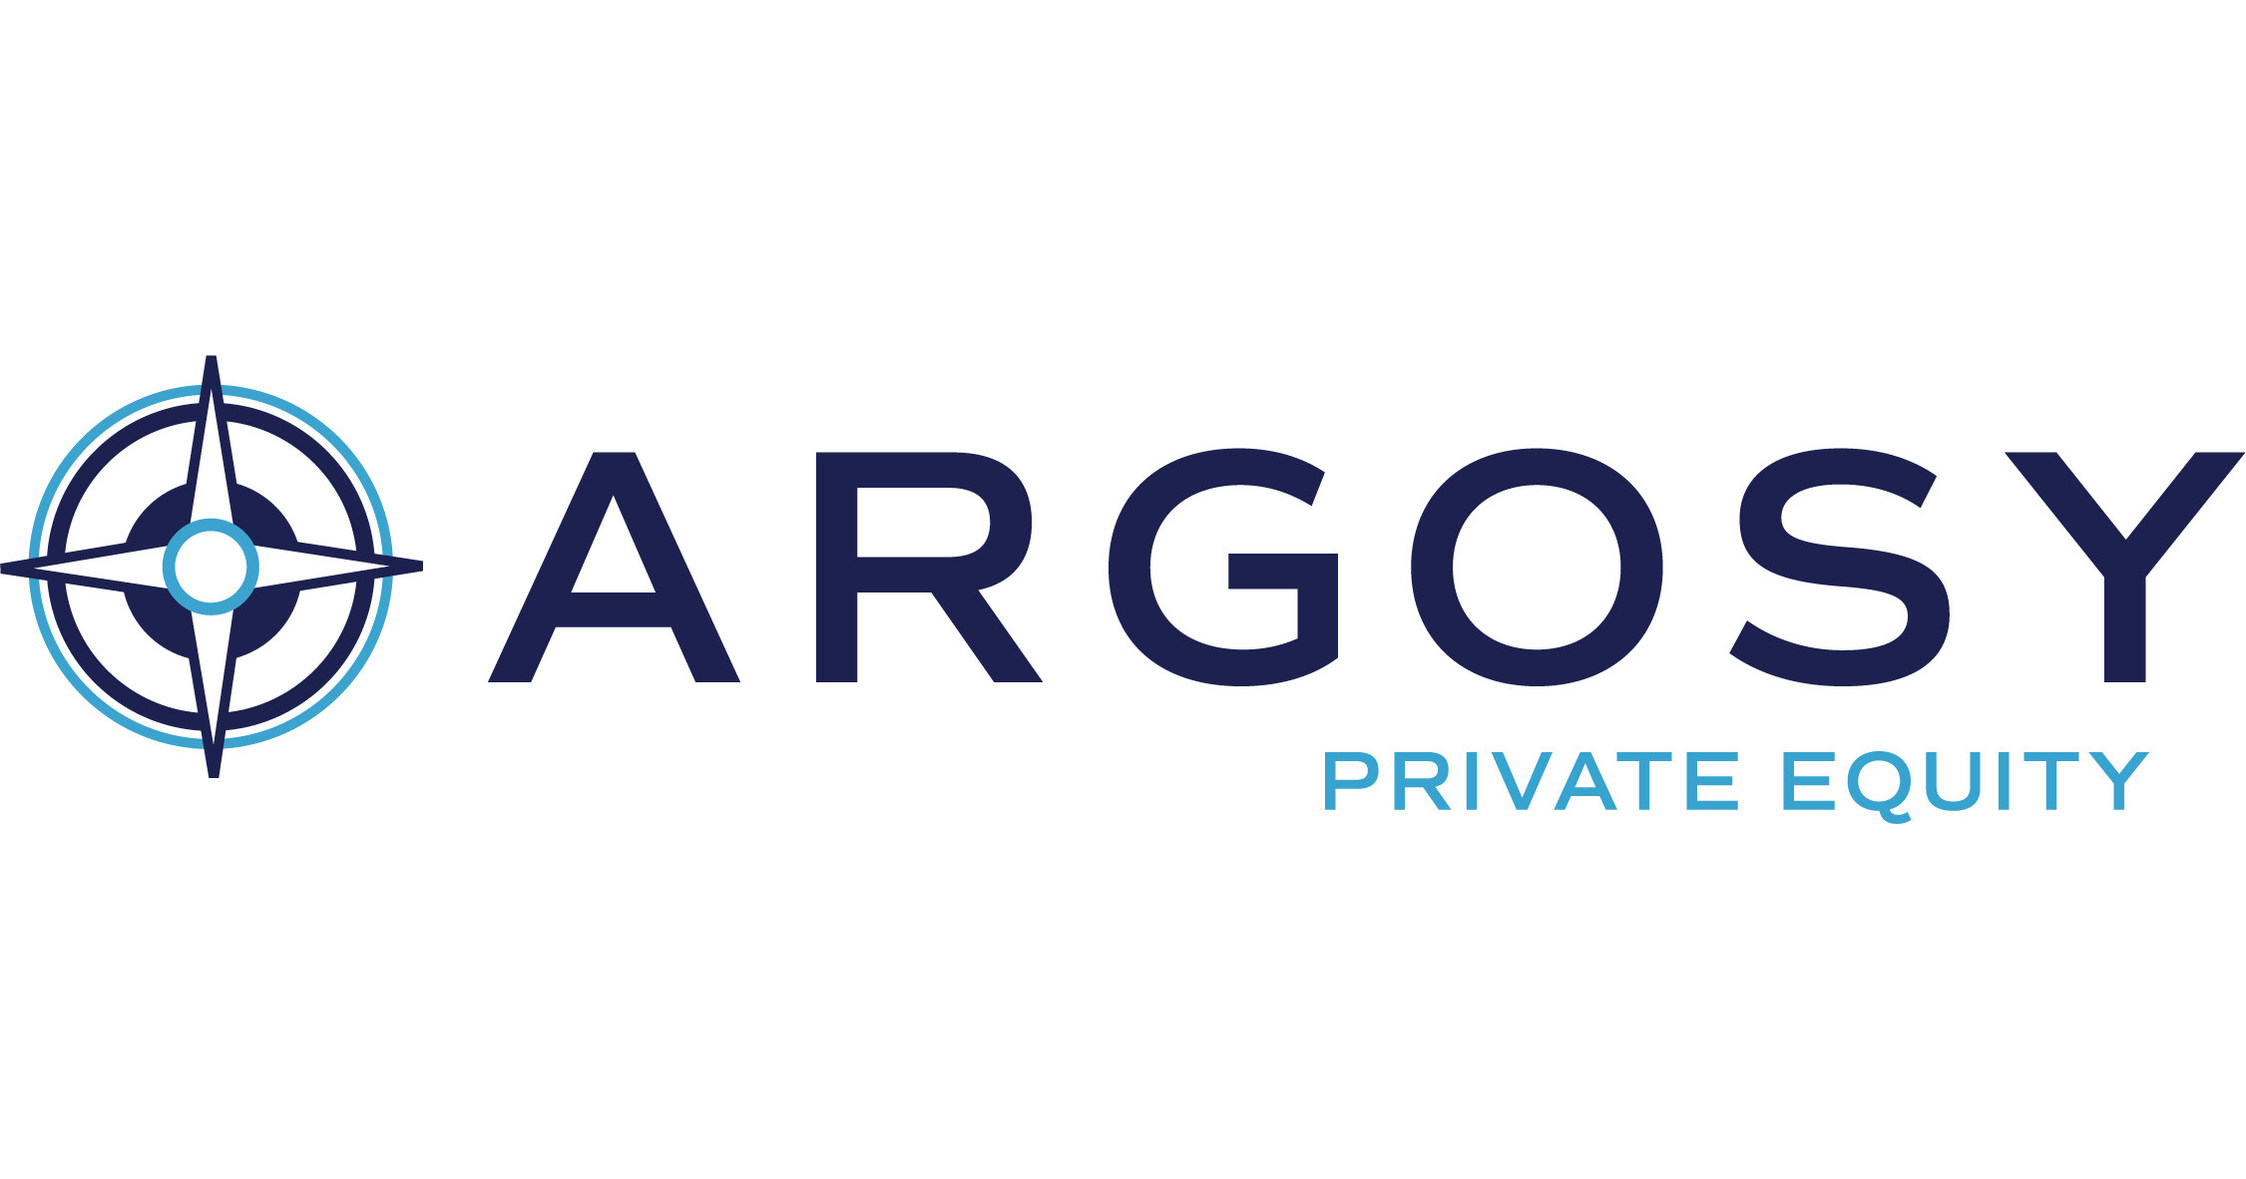 Argosy Private Equity